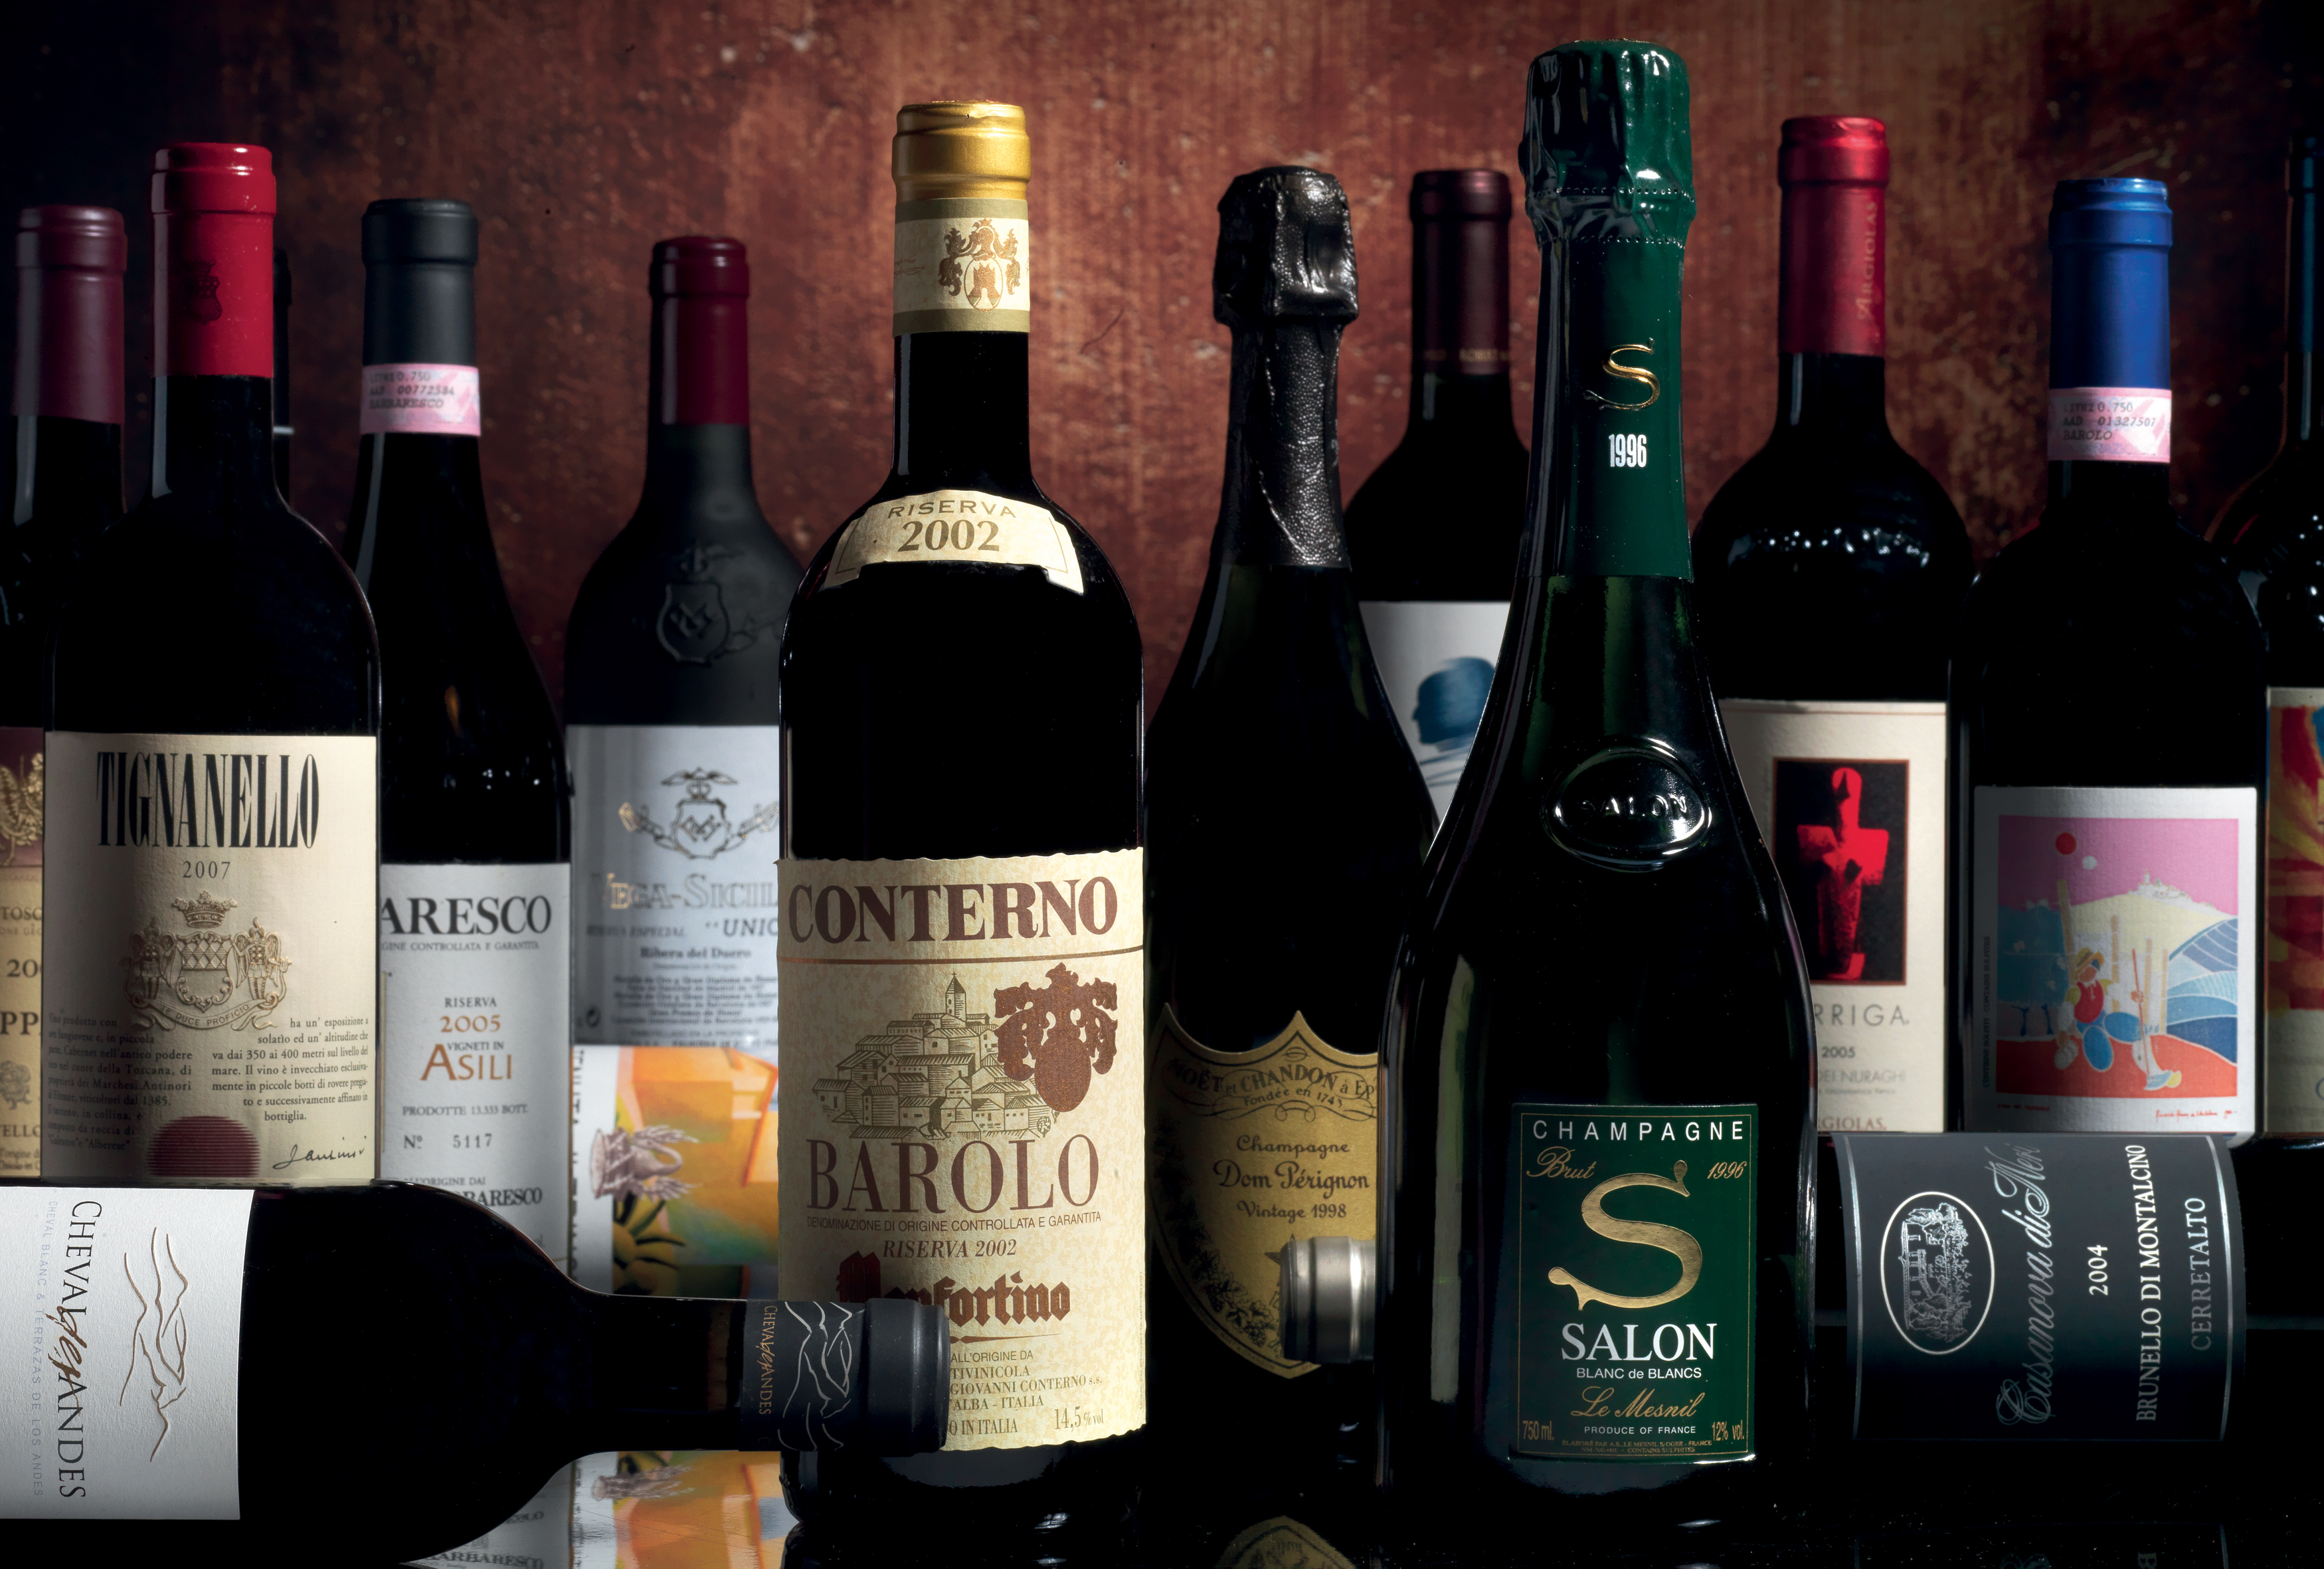 Una preziosa selezione di vini e distillati da collezioni private